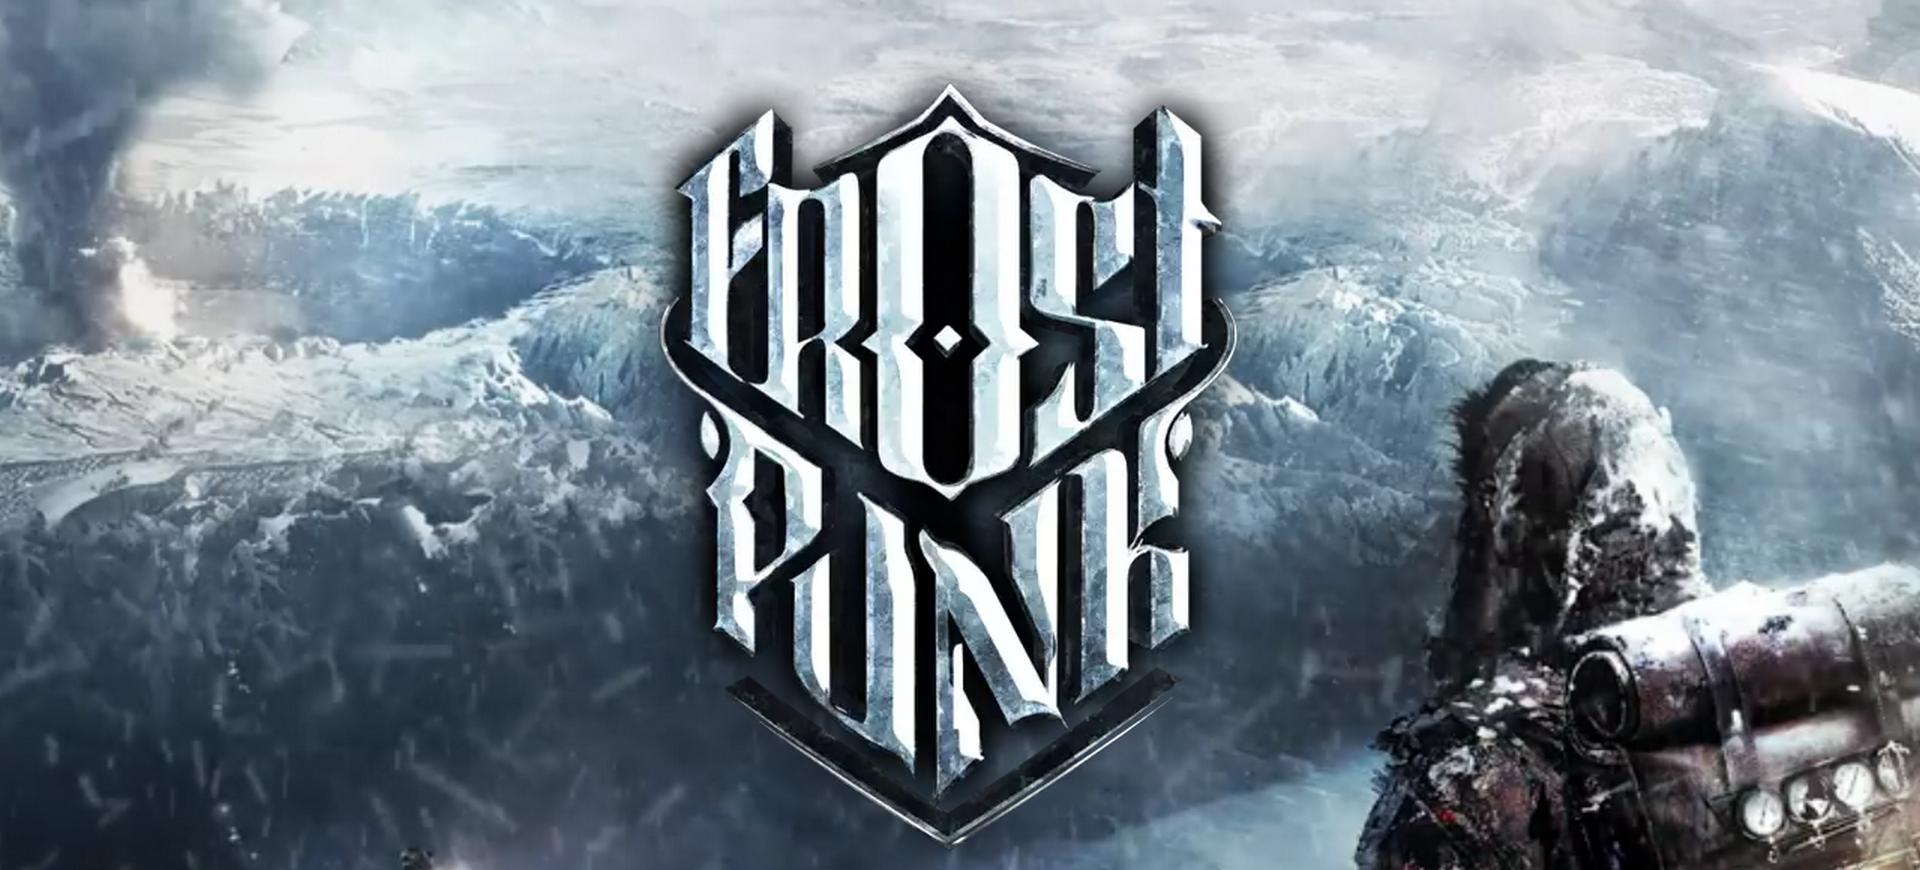 11 Bit Studios tiết lộ dự án mới mang tên Frostpunk – Tin Game